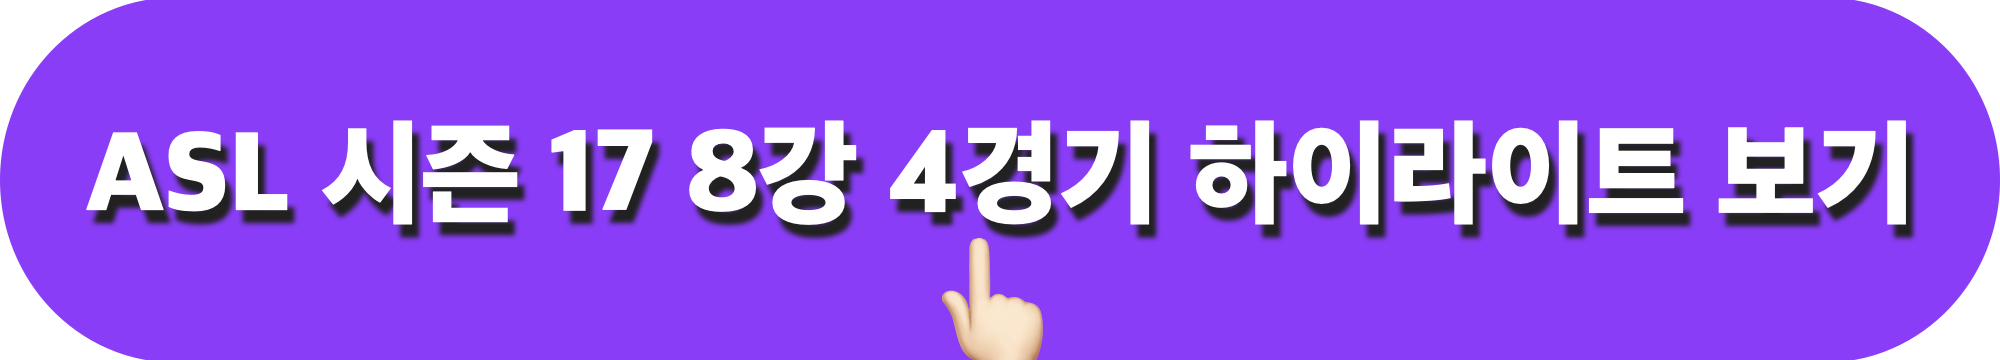 ASL시즌17_8강4경기_하이라이트_다시보기